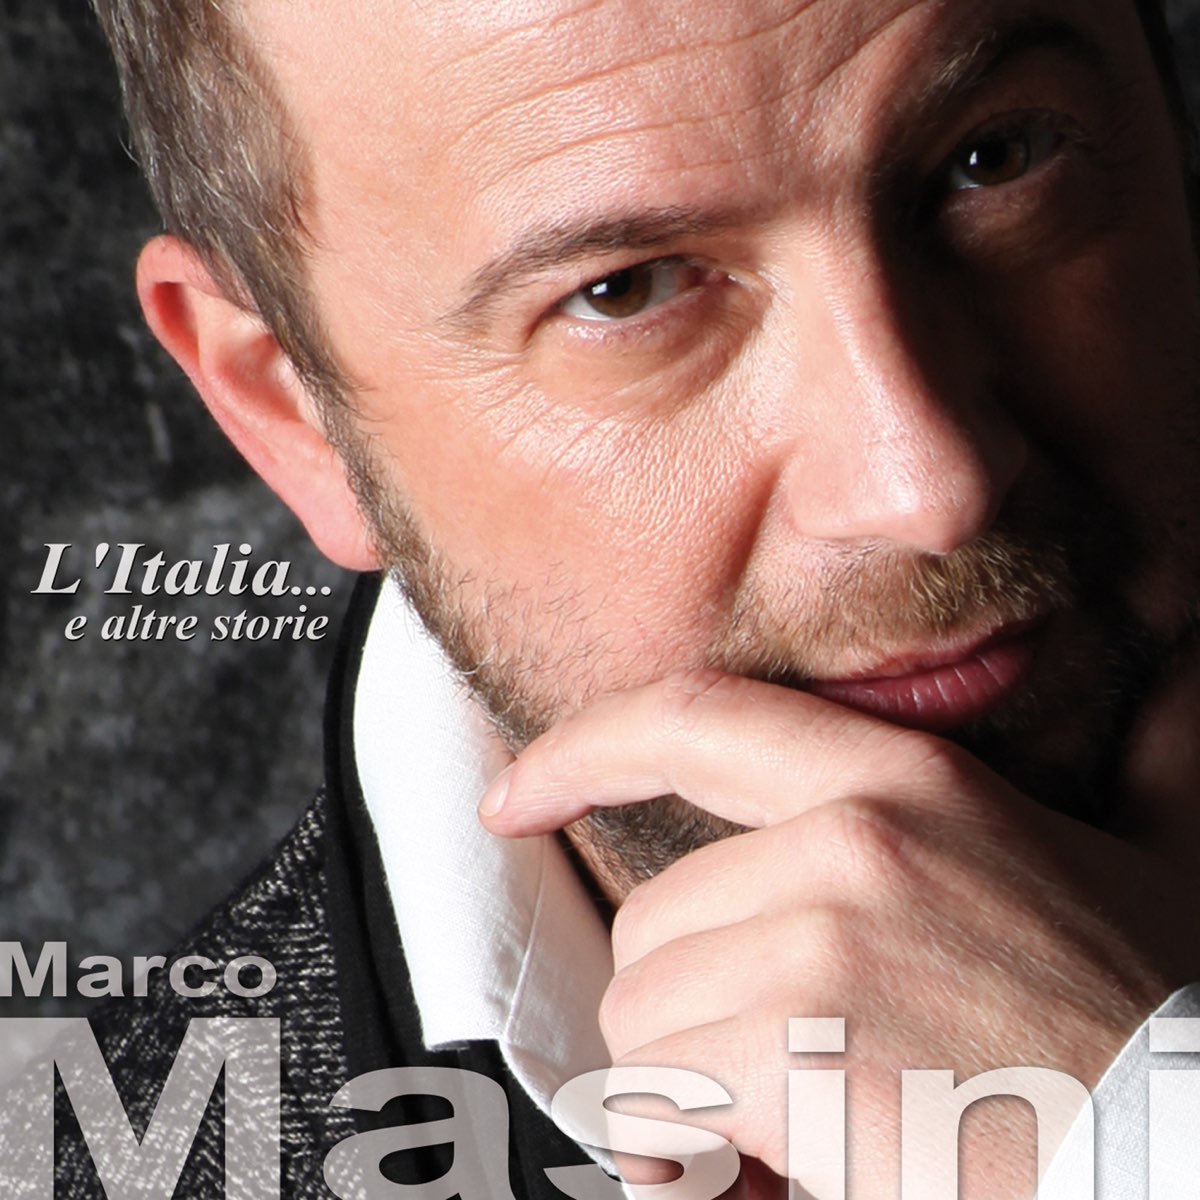 ‎L'Italia... e altre storie by Marco Masini on Apple Music